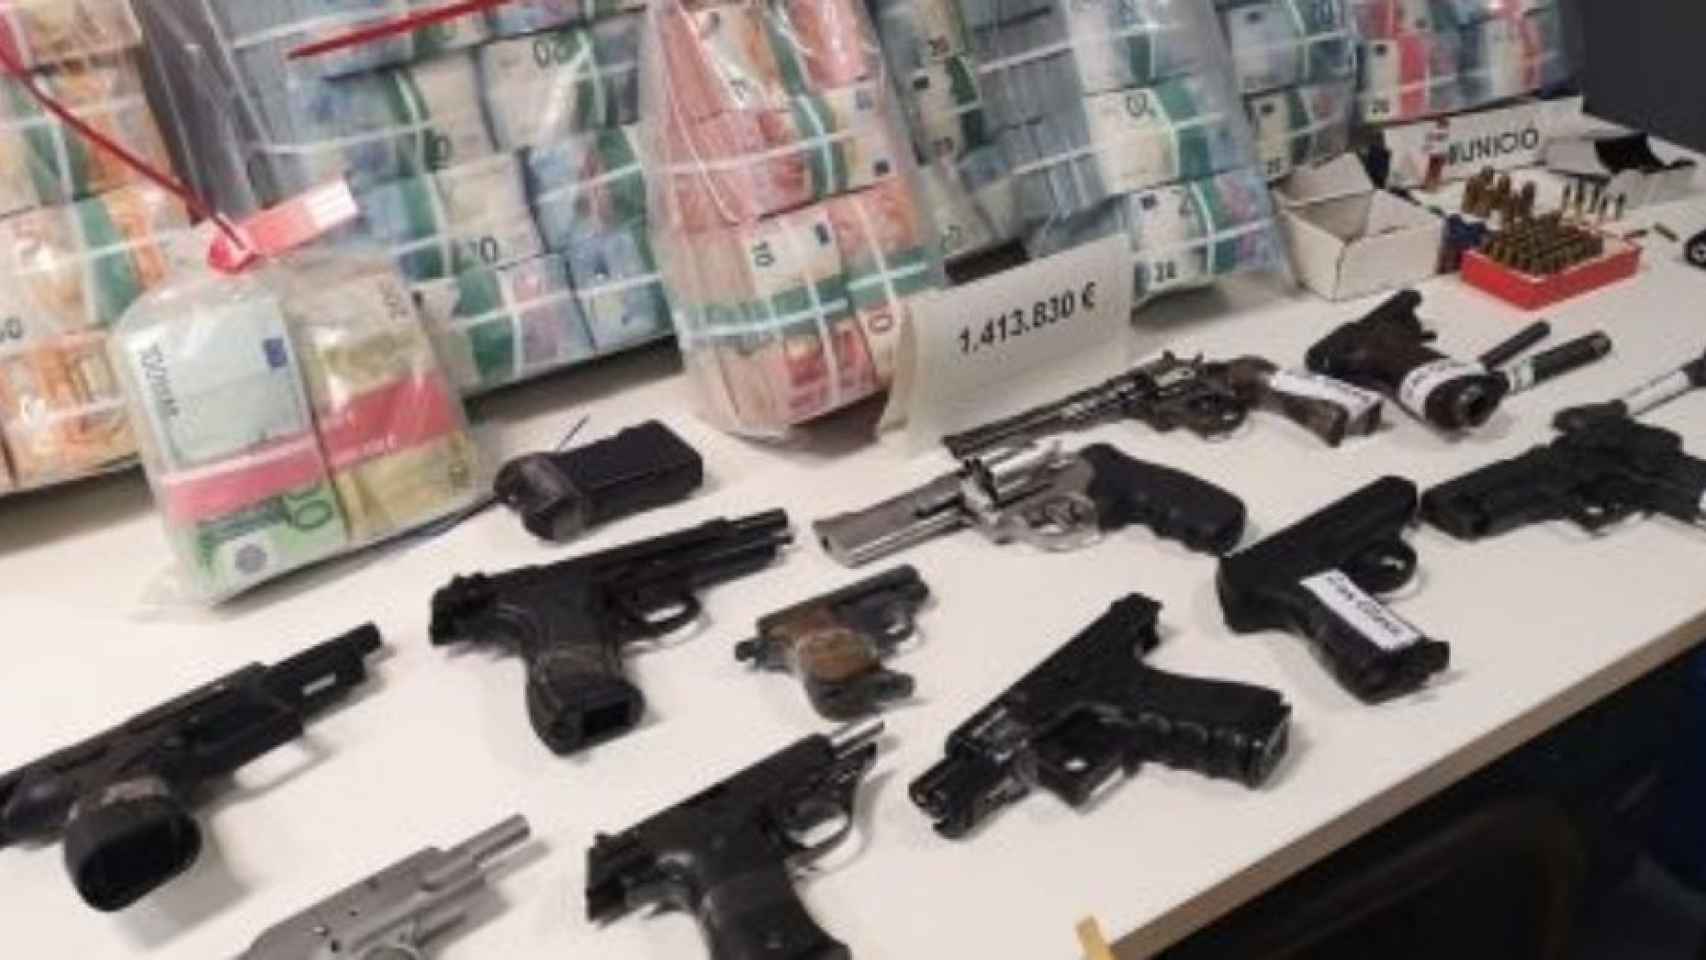 Pistolas y revólveres requisados por los Mossos d'Esquadra en una redada antidroga en Badalona el 2019 / G.A